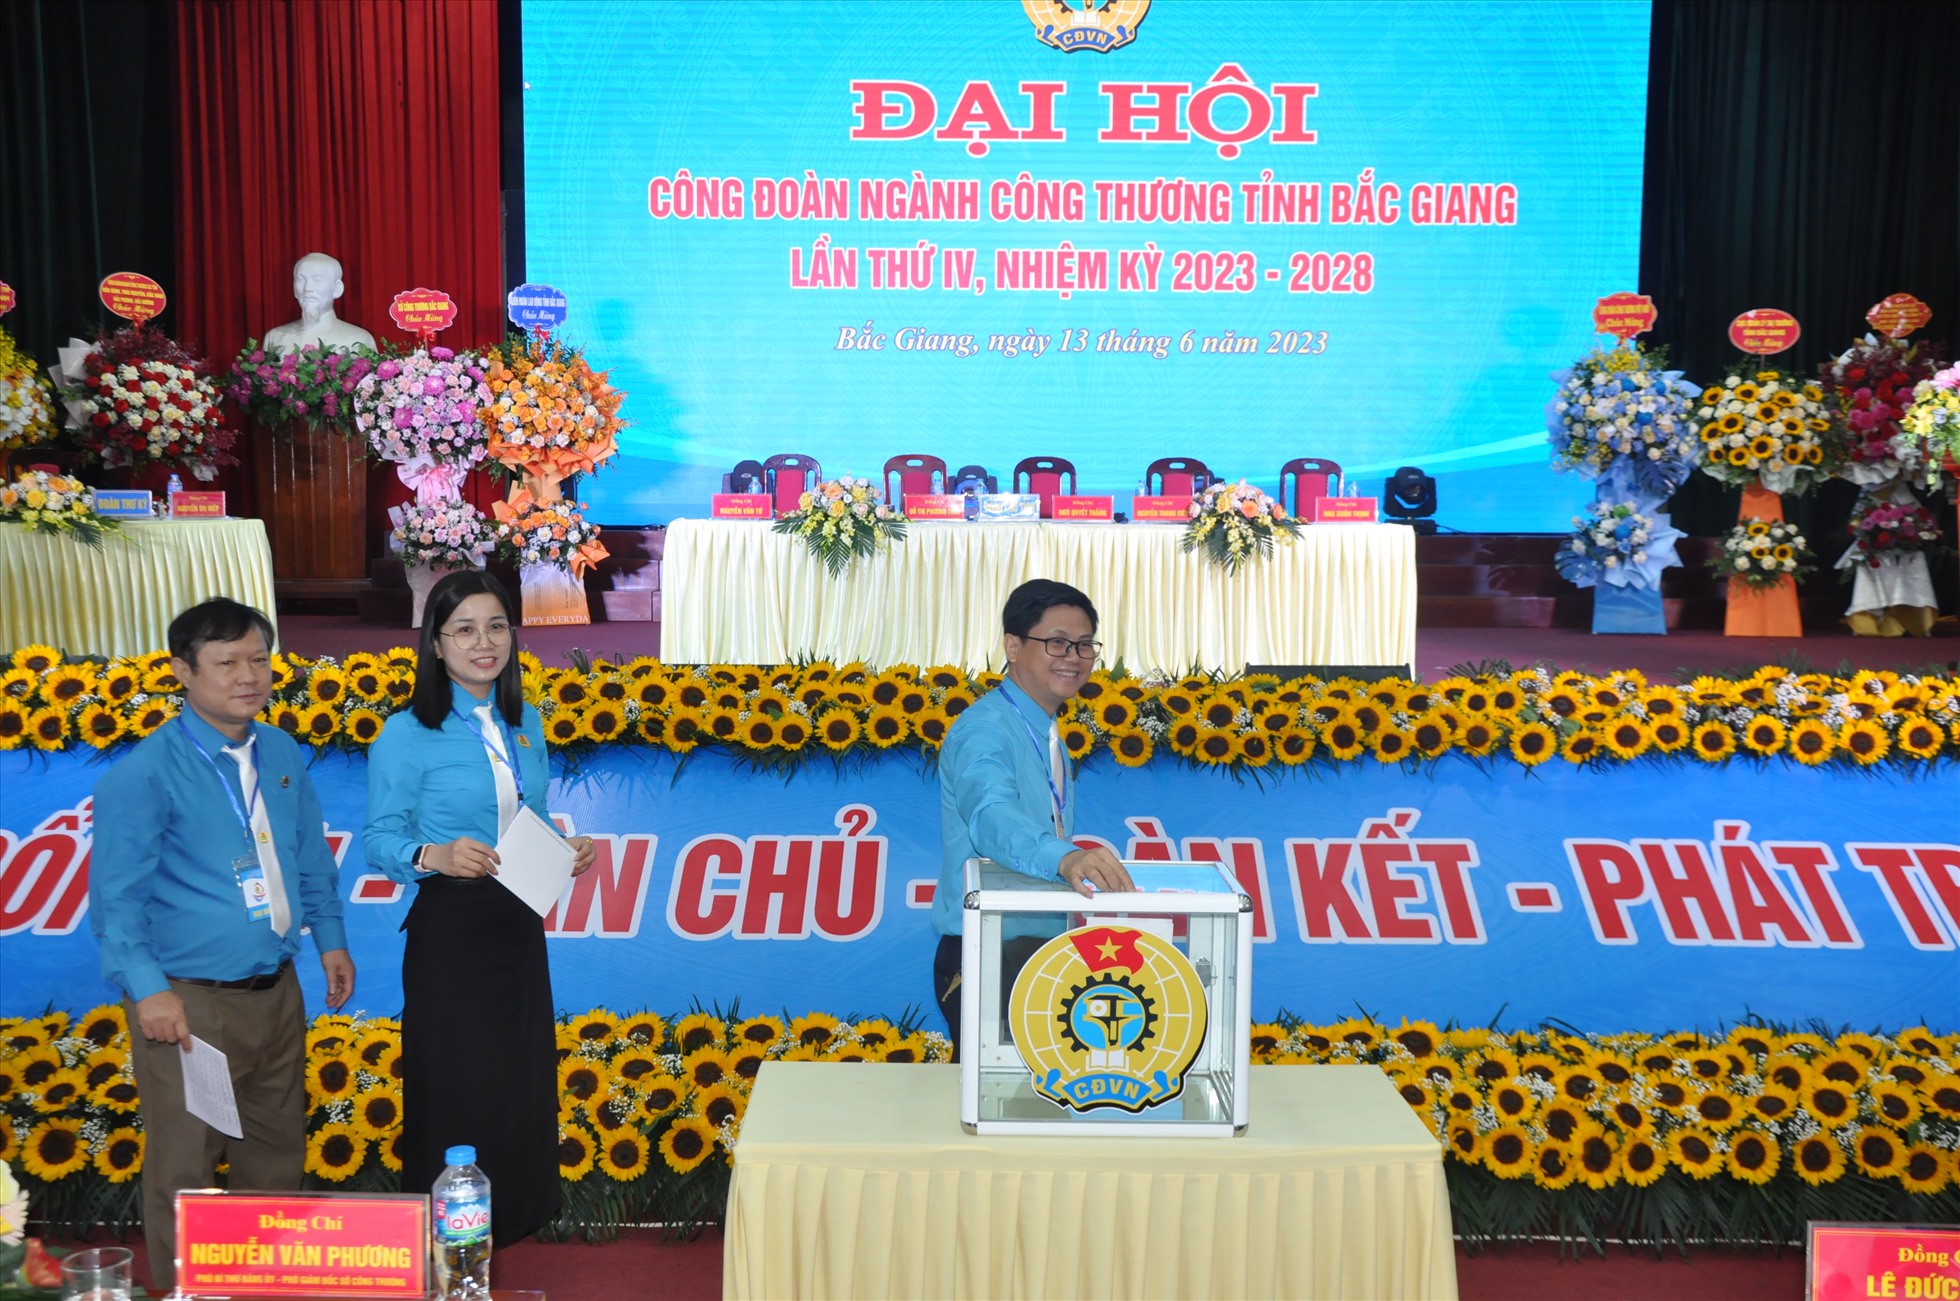 Các đại biểu bỏ phiếu bầu Ban Chấp hành Công đoàn ngành Công Thương tỉnh Bắc Giang khoá IV, nhiệm kỳ 2023-2028. Ảnh: Quế Chi